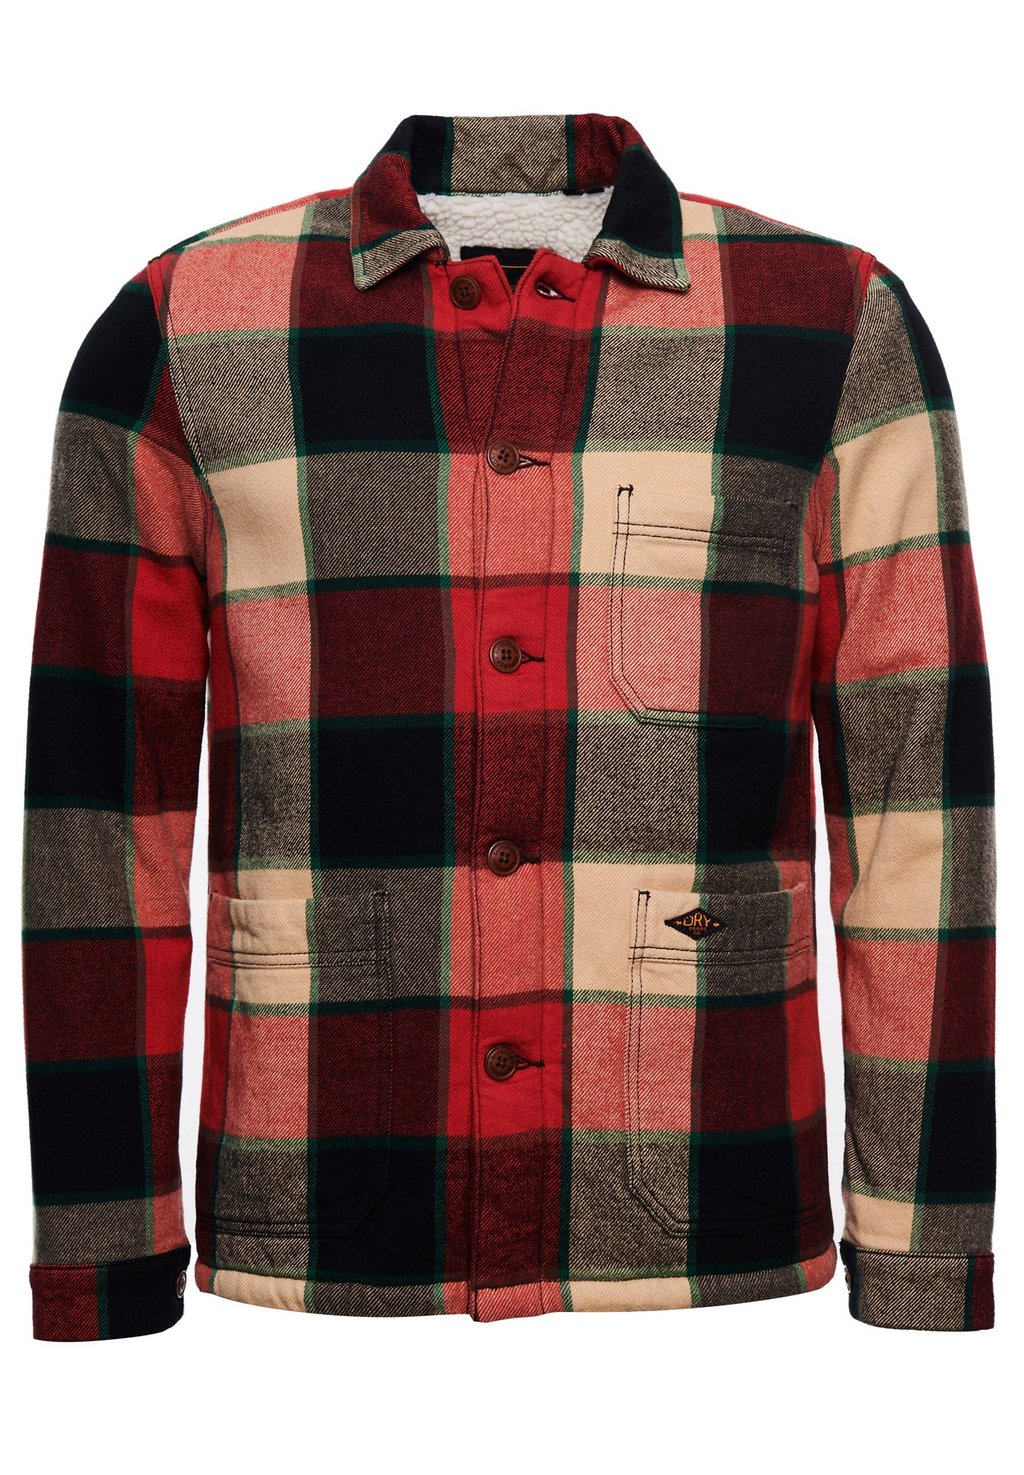 Рубашка OVERSIZED UTILITY CHECK OVER Superdry, красный рубашка zara kids oversized check кремовый красный